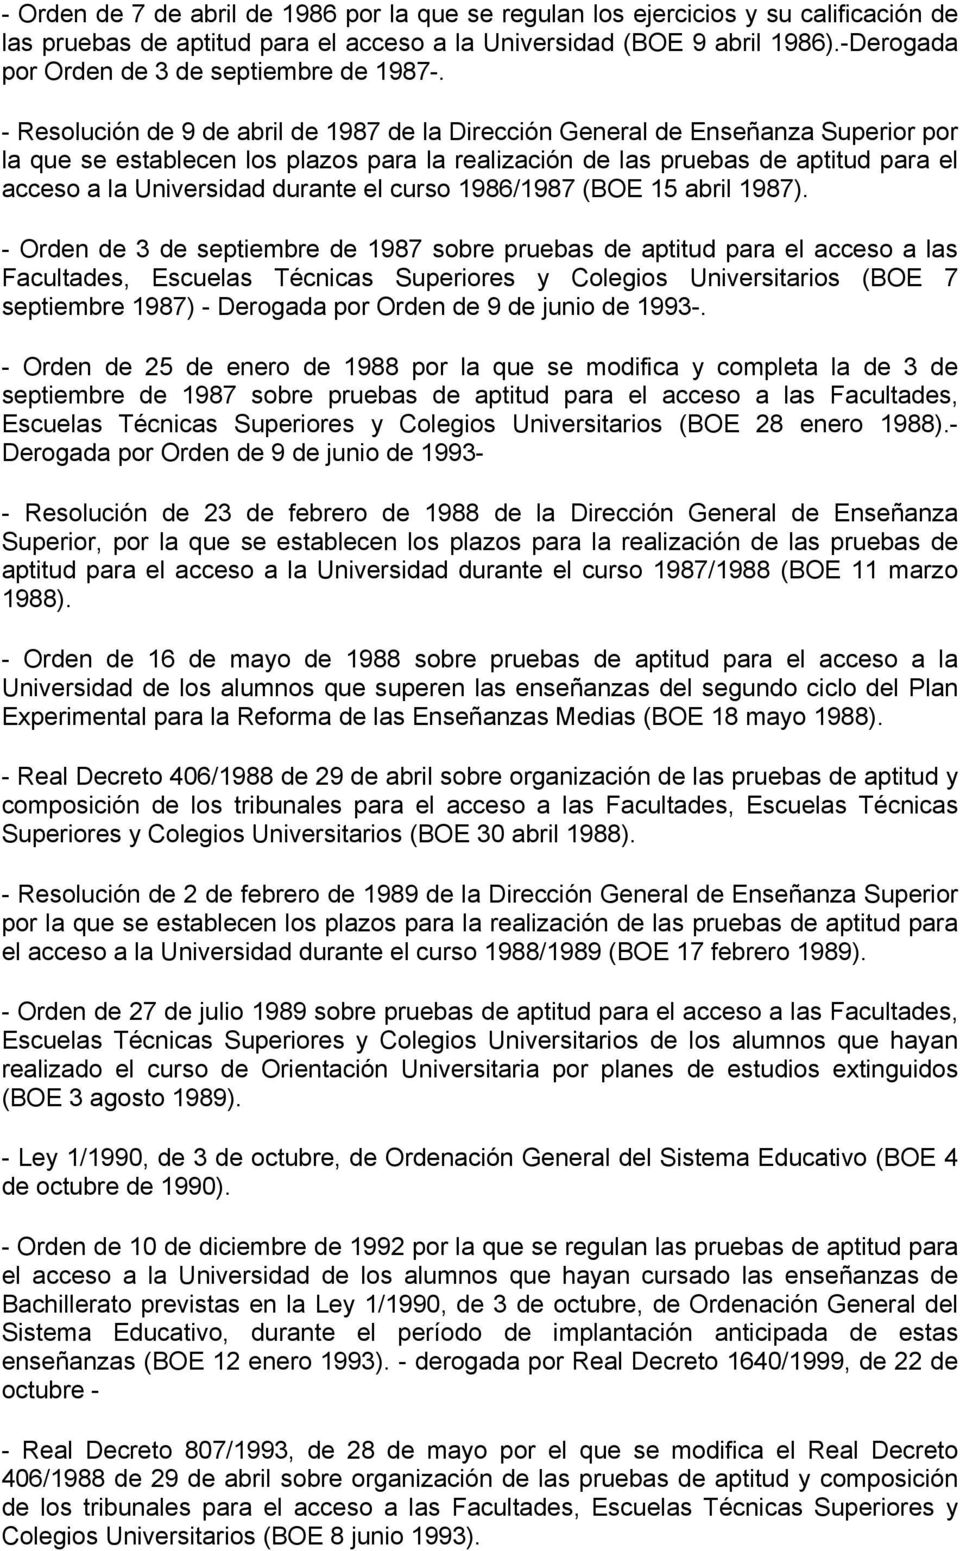 - Resolución de 9 de abril de 1987 de la Dirección General de Enseñanza Superior por la que se establecen los plazos para la realización de las pruebas de aptitud para el acceso a la Universidad